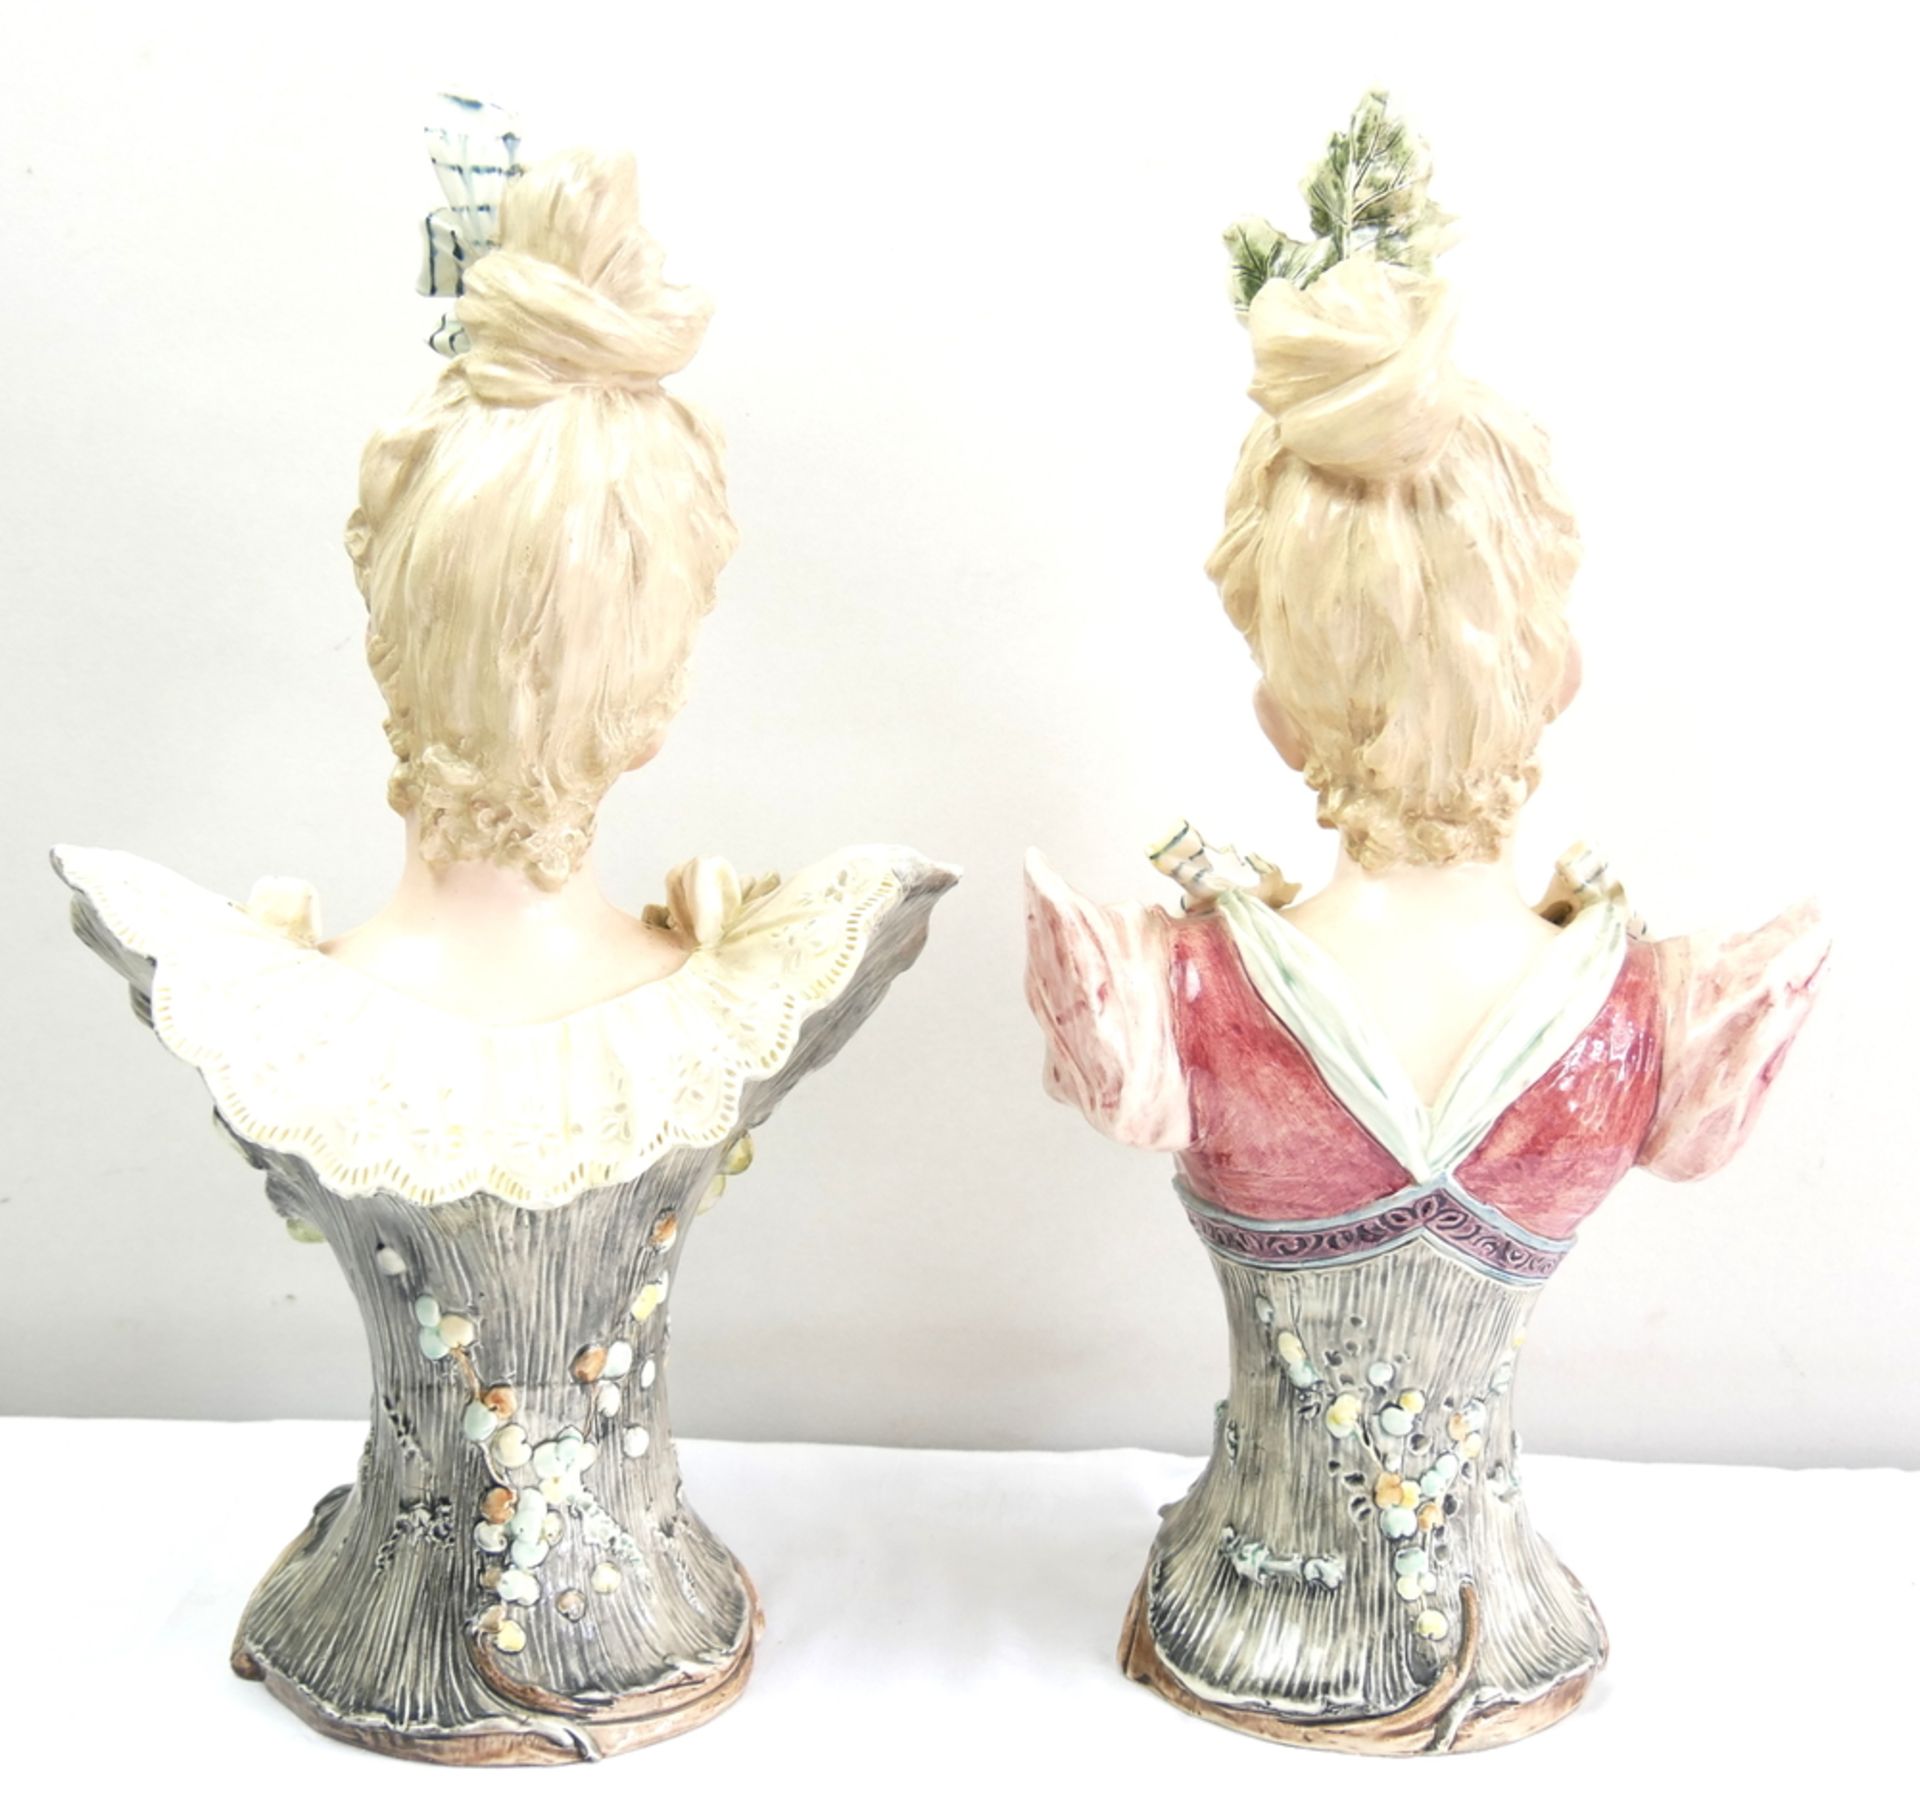 2 alte Jugendstil Porzellanbüsten, Frauen mit Blumen geschmückt, teilweise mit Chips, gemarkt mit - Image 6 of 9